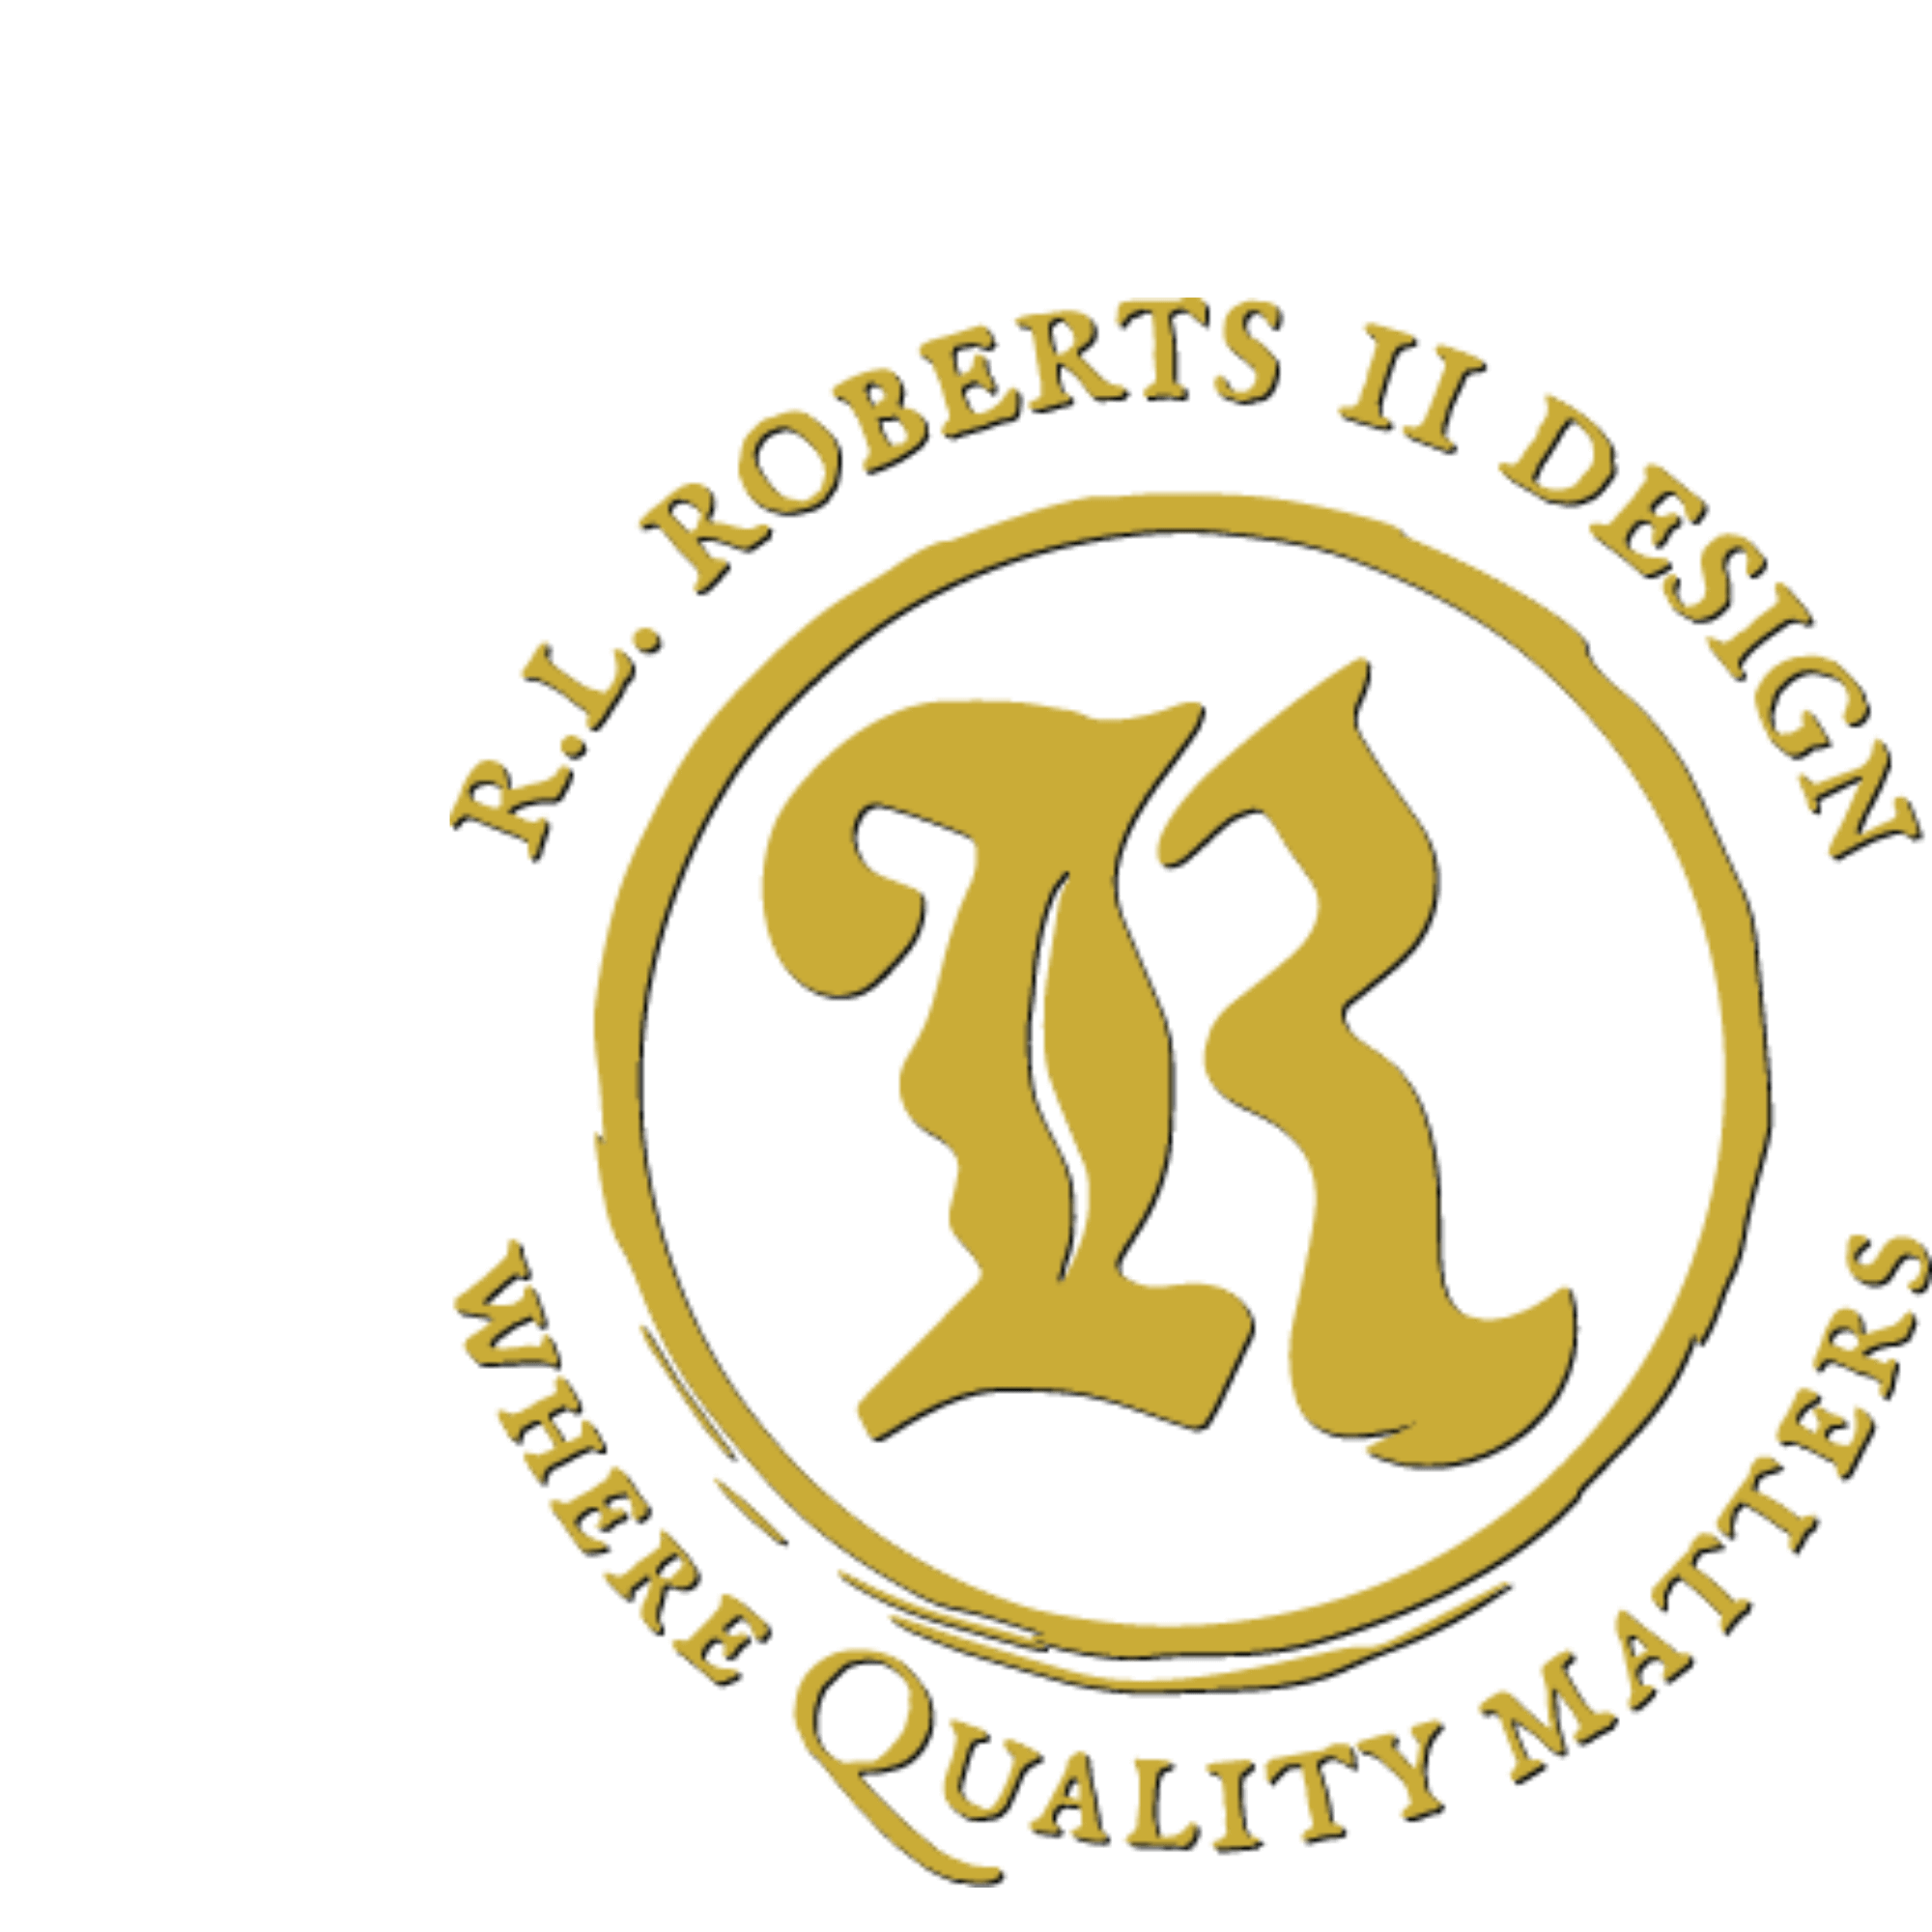 rl roberts II design logo gold shadow